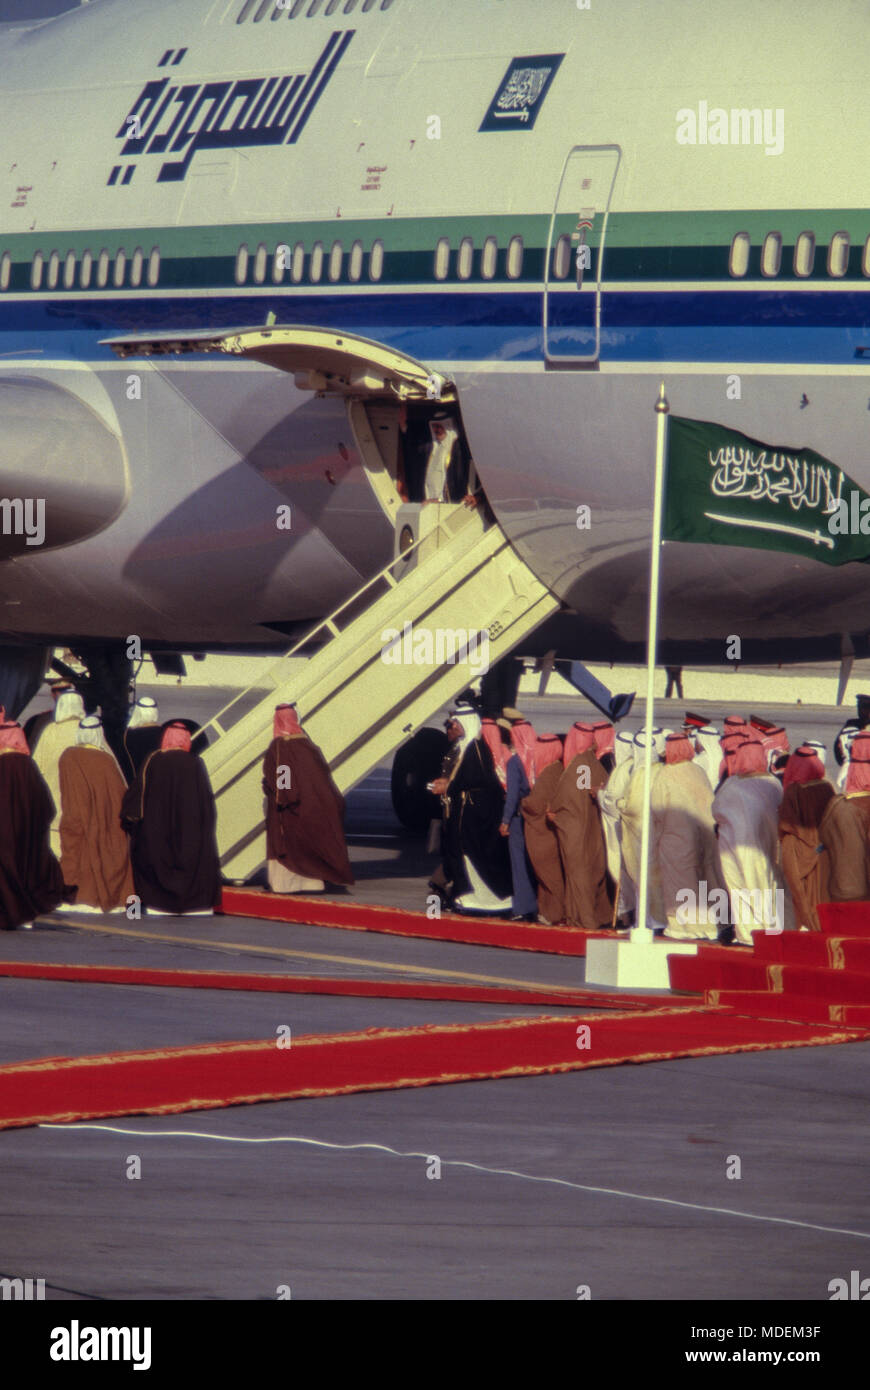 Manama, Bahrain - 26 novembre 1986 - Re Fahd bin Abdulaziz Al Saud arriva all'Aeroporto Internazionale di Bahrain, soddisfatte dalla Sua Altezza Reale Shaikh Isa Bin Salman Al Khalifa, dellâ emiro del Bahrein, per la cerimonia di apertura il $800 milioni di causeway collegando il Bahrein e Arabia Saudita, costruito dalla società olandese Ballast Nedam. Foto Stock